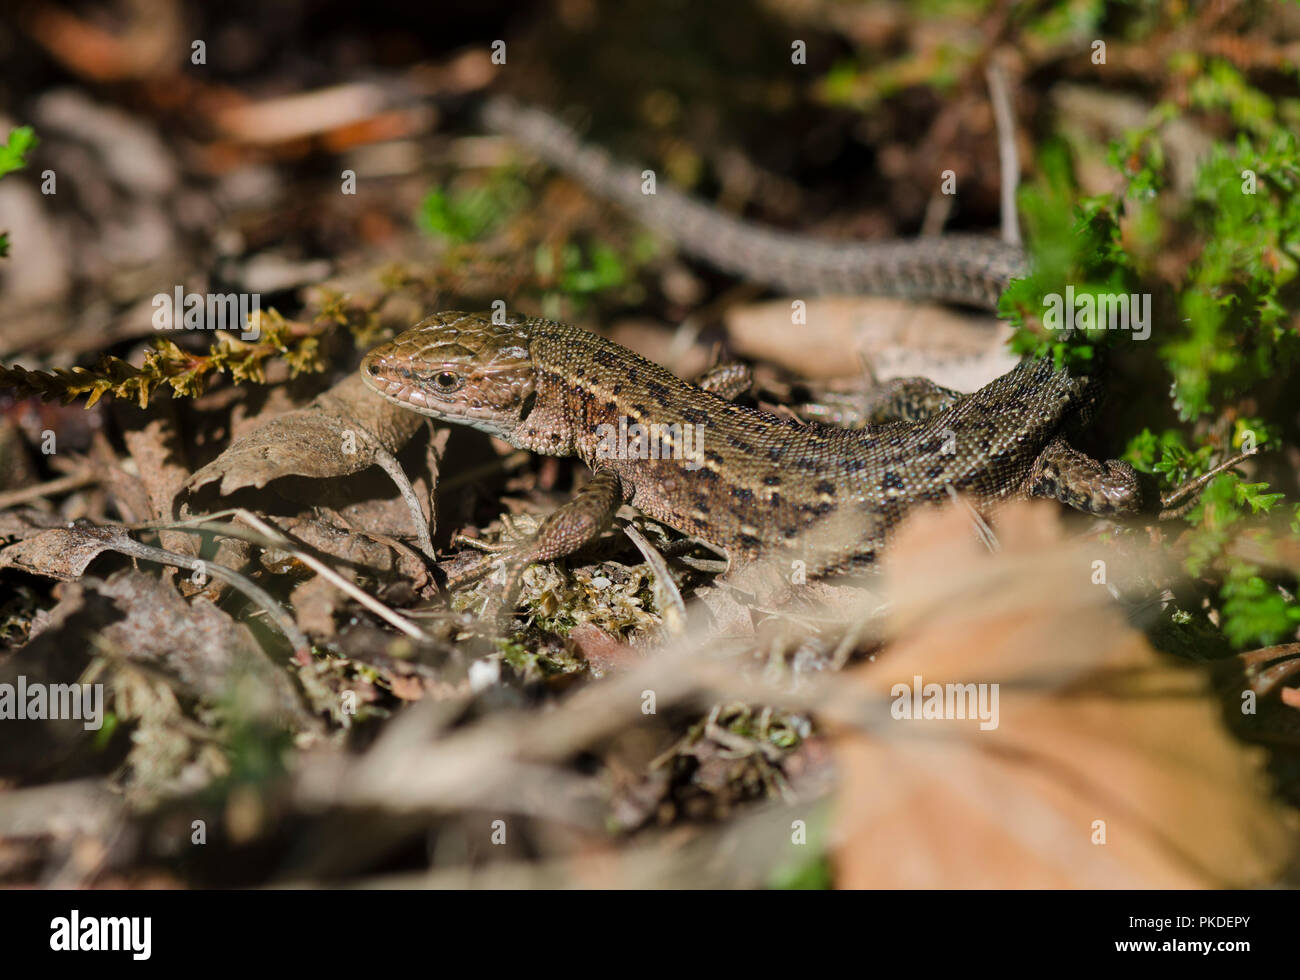 Lebendgebärenden Lizard oder gemeinsamen Eidechse, Zootoca vivipara, Limburg, Niederlande. Stockfoto